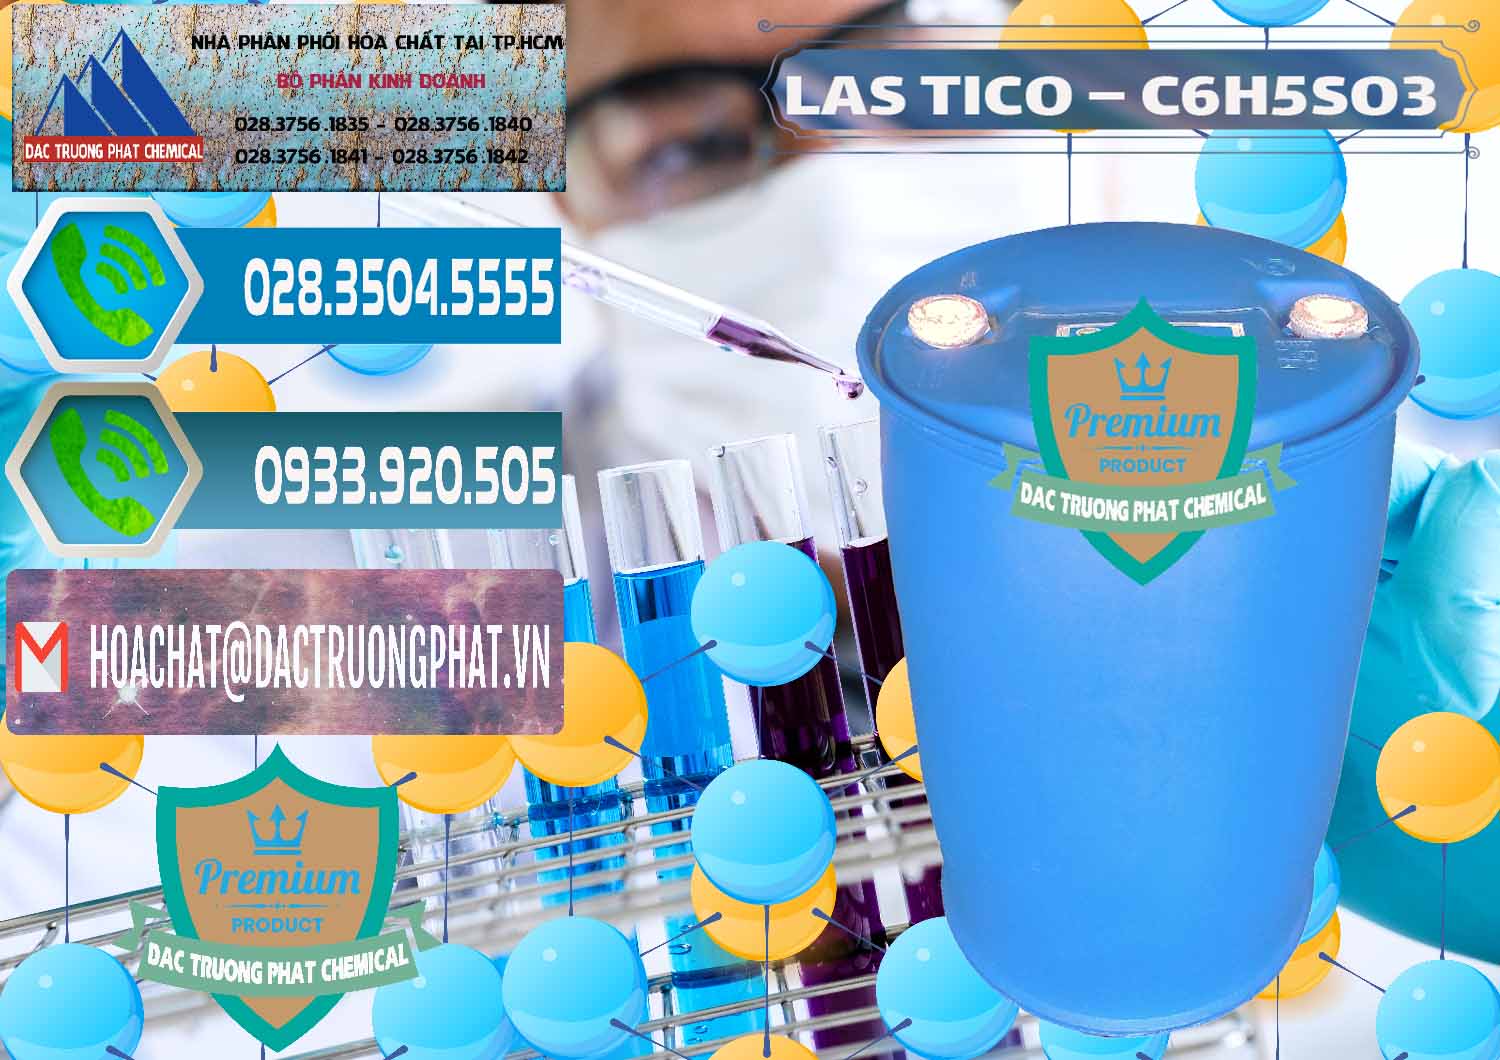 Nơi chuyên cung cấp - bán Chất tạo bọt Las H Tico Việt Nam - 0190 - Chuyên kinh doanh - cung cấp hóa chất tại TP.HCM - congtyhoachat.net